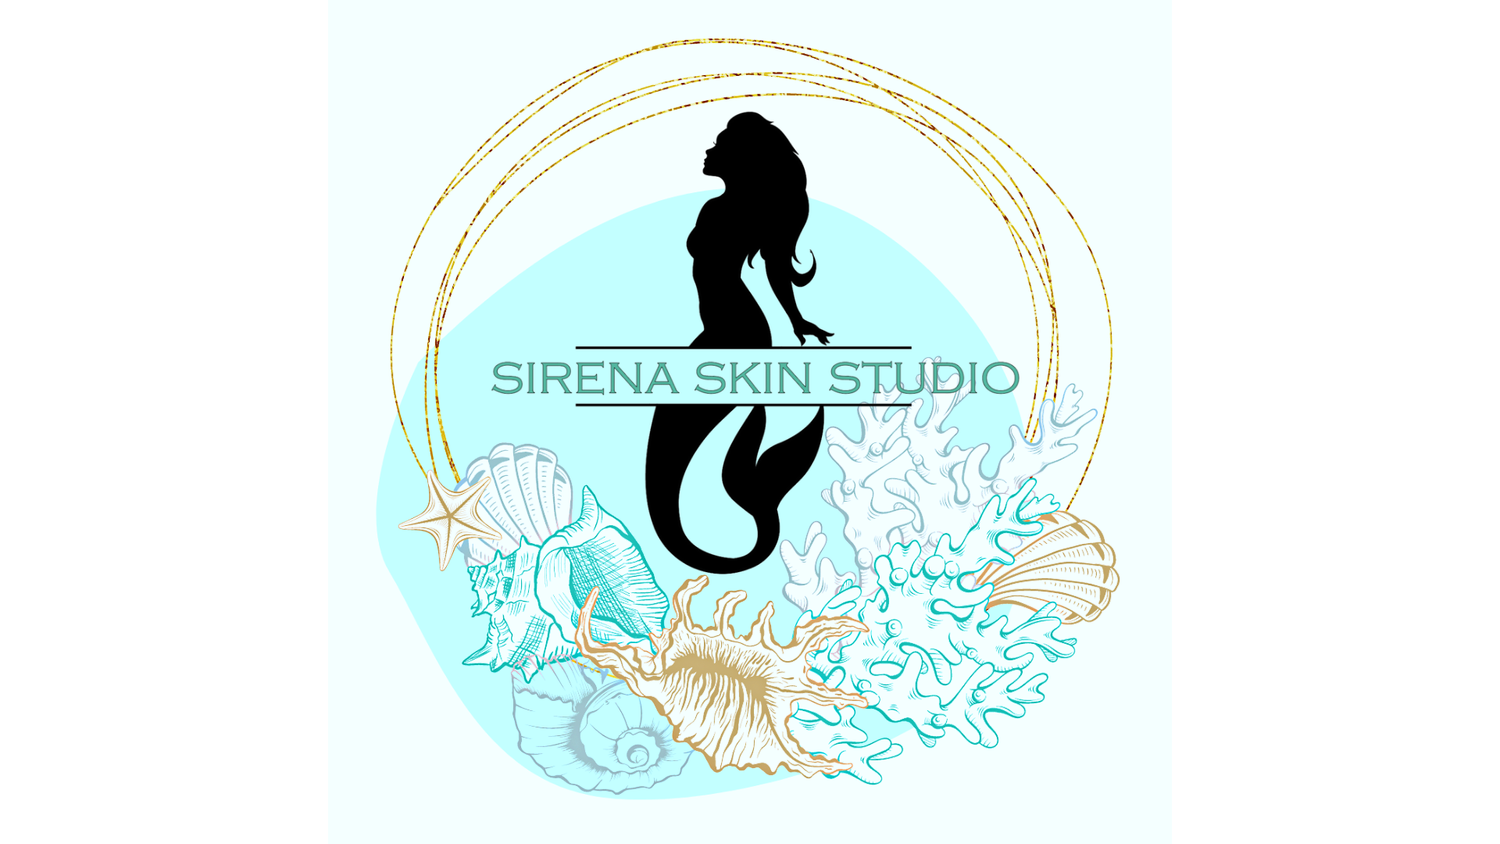 SIRENA SKIN STUDIO